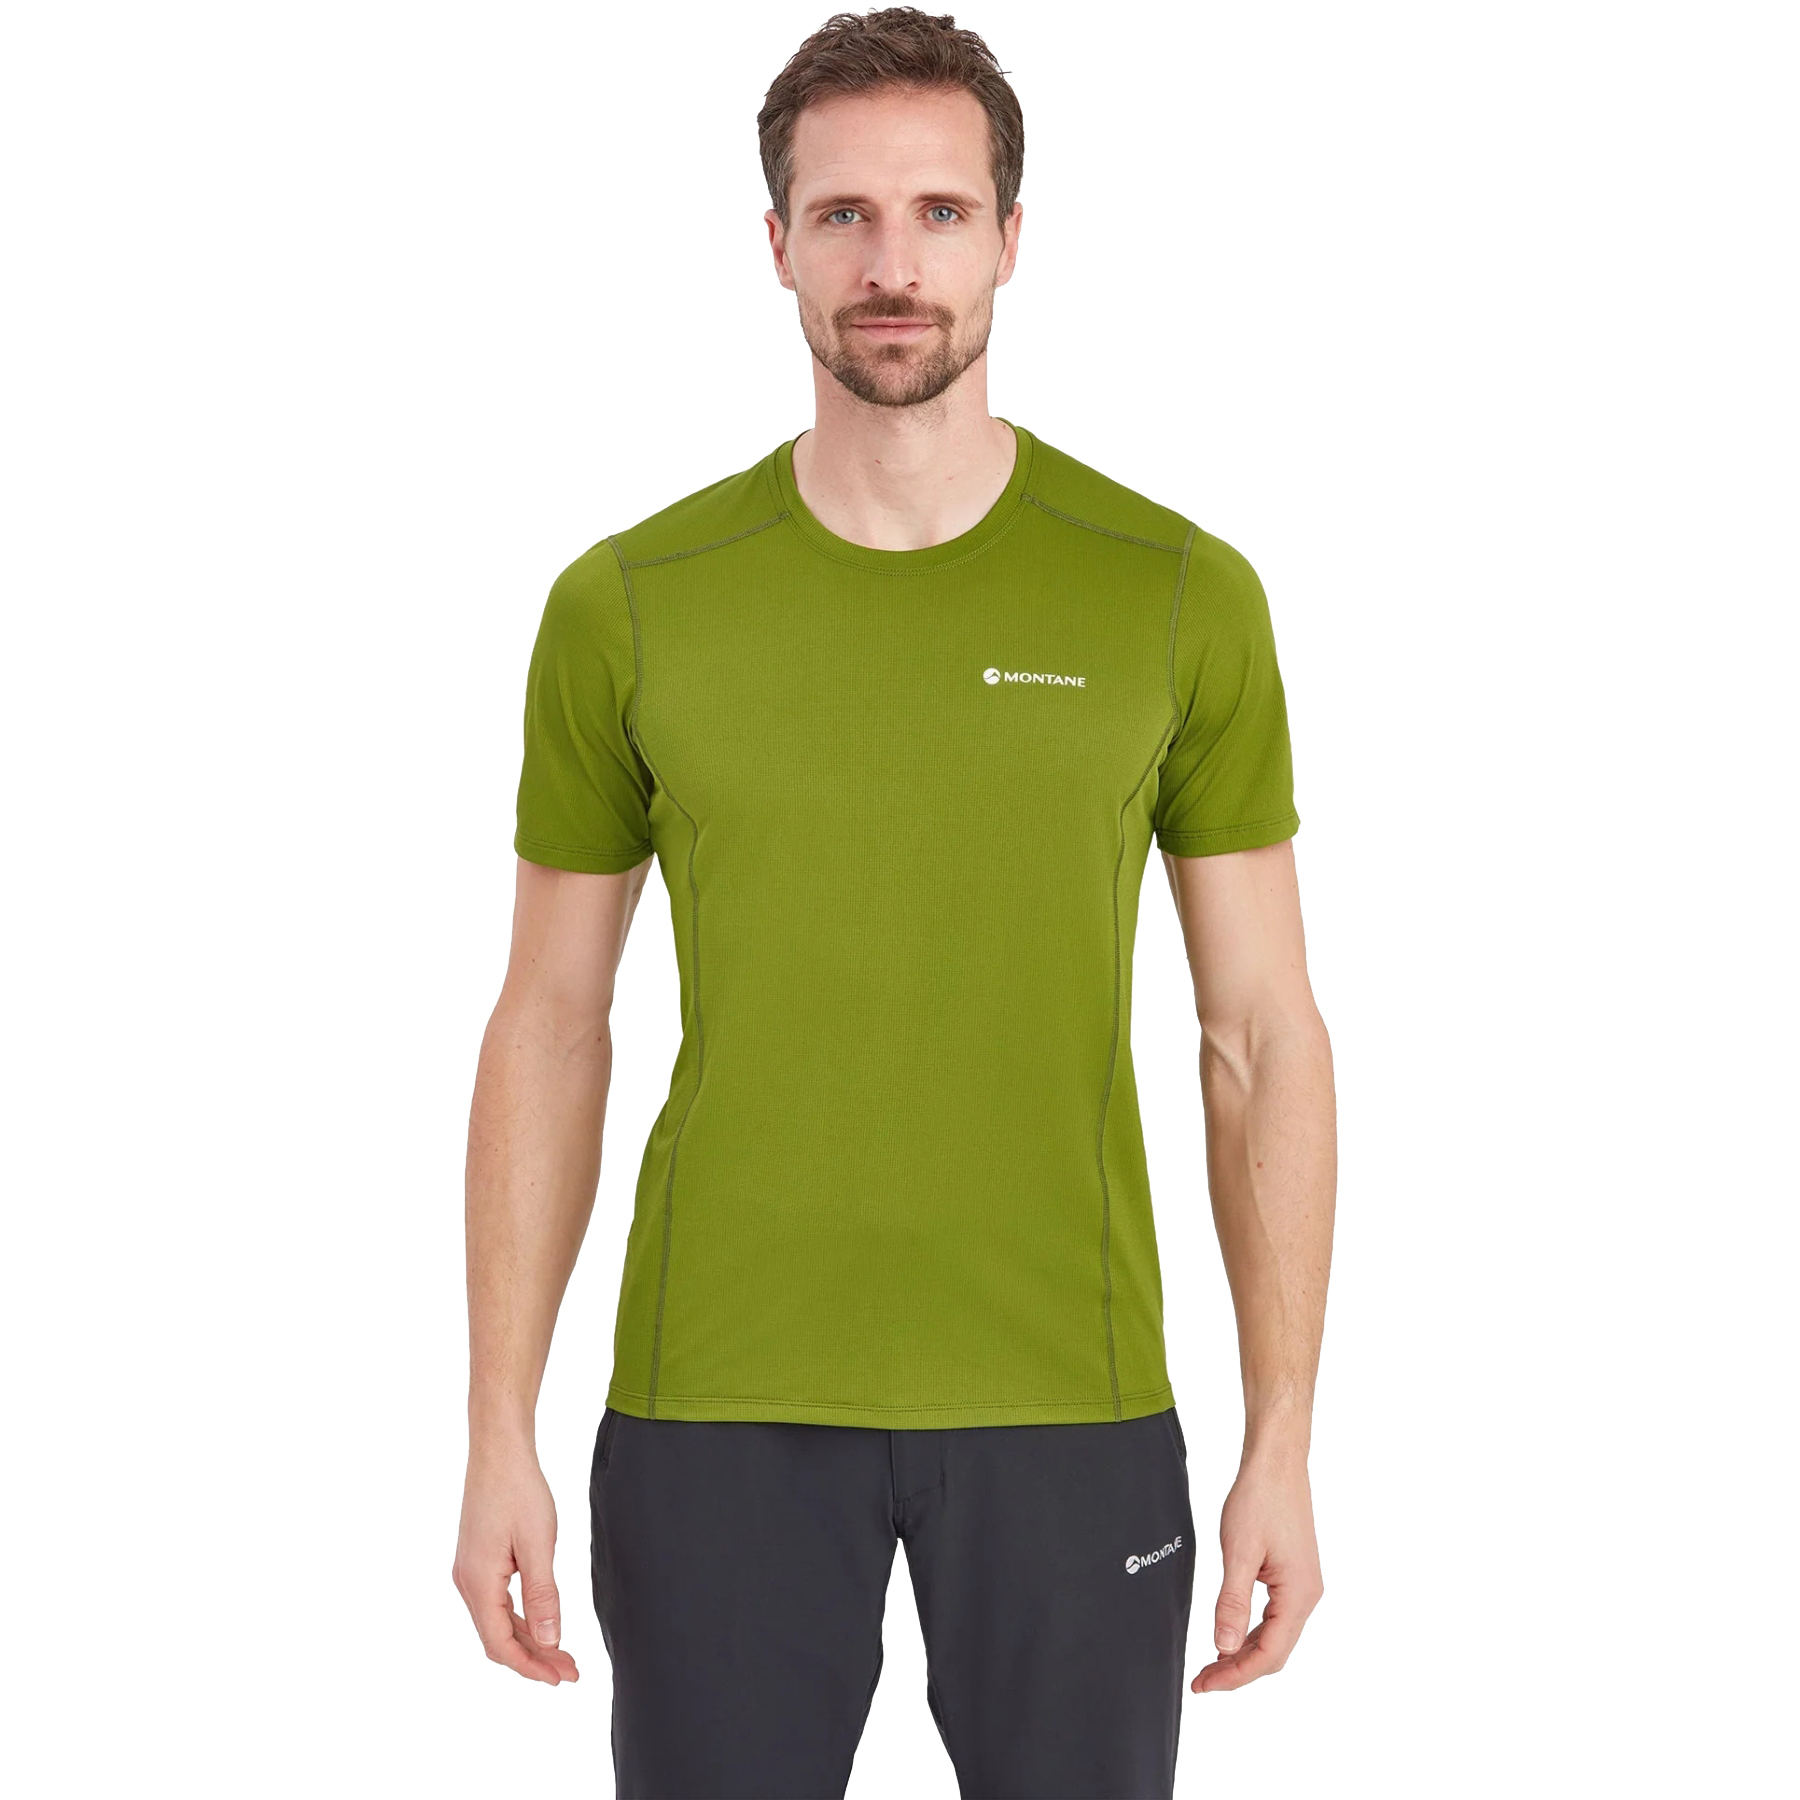 Productfoto van Montane Dart Lite T-Shirt - alder green